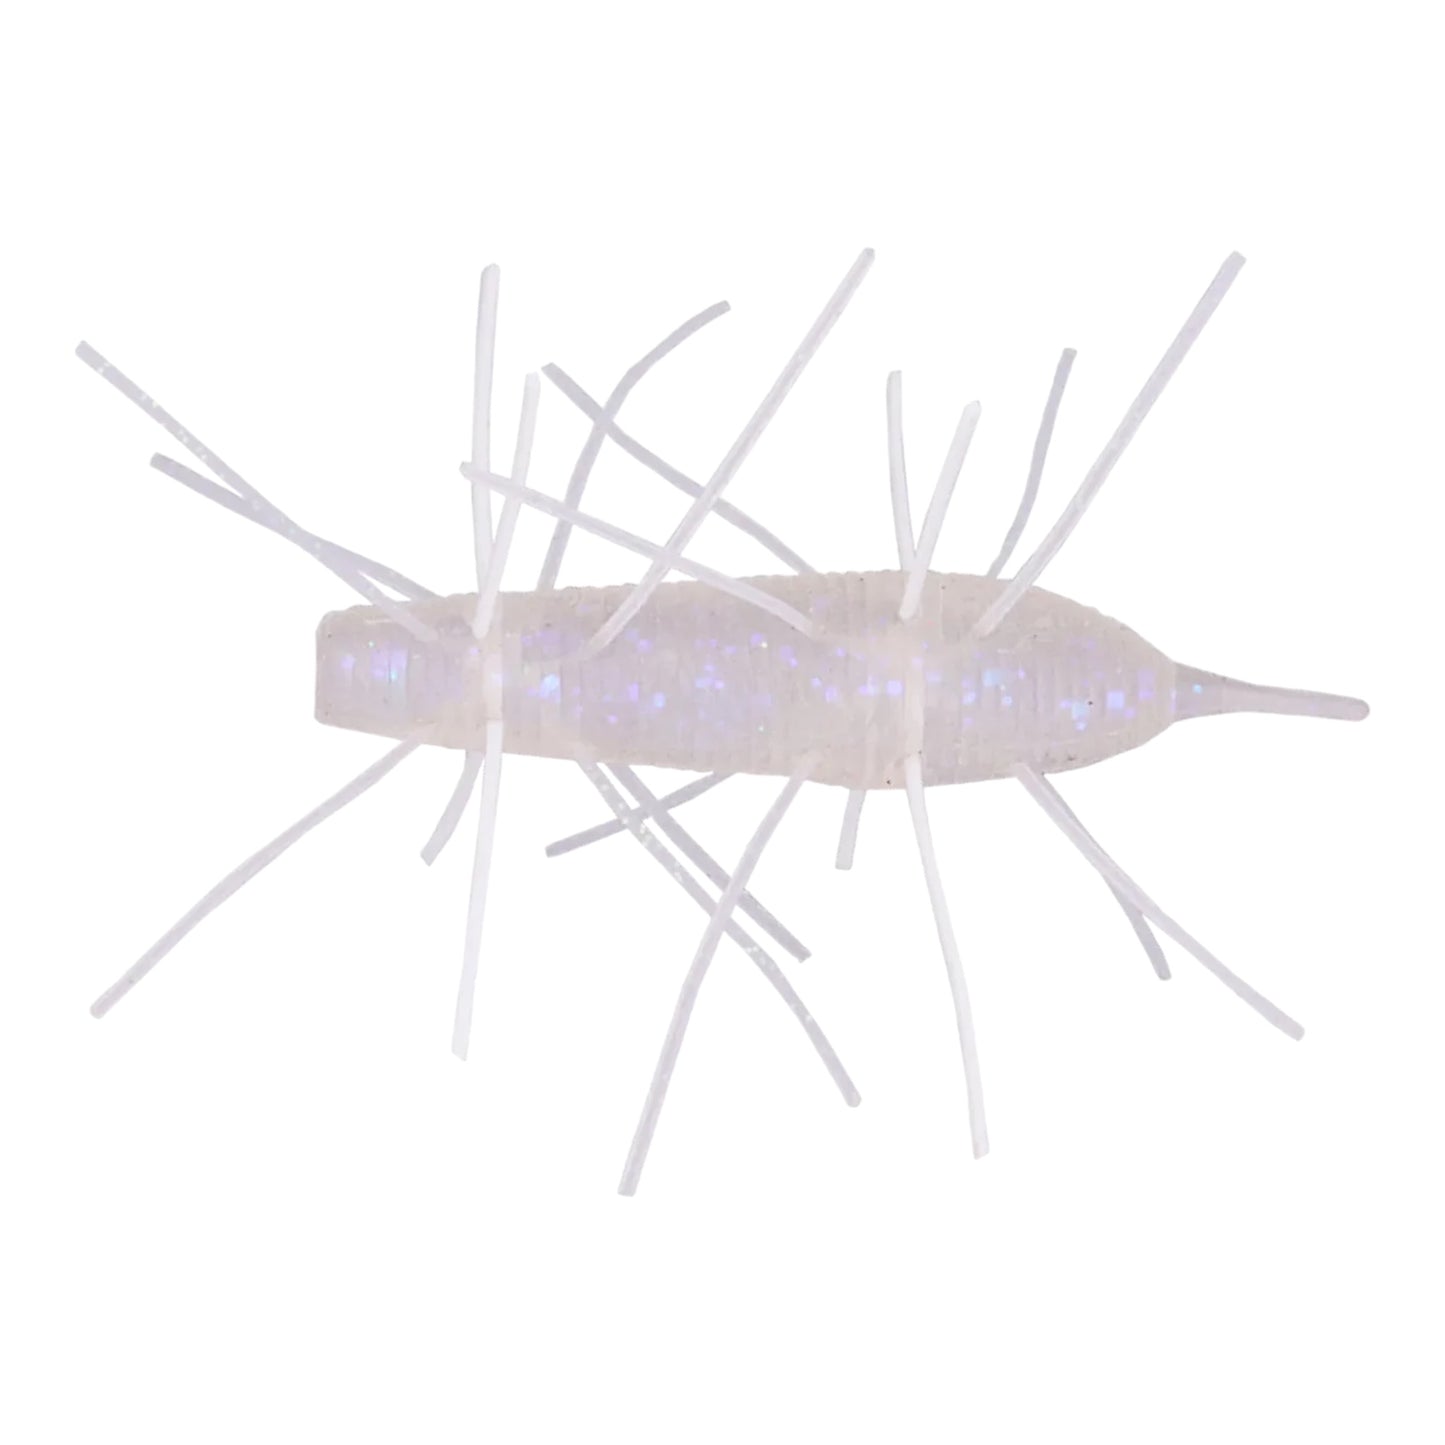 Geecrack Floating Imo Kemushi Stick Worm